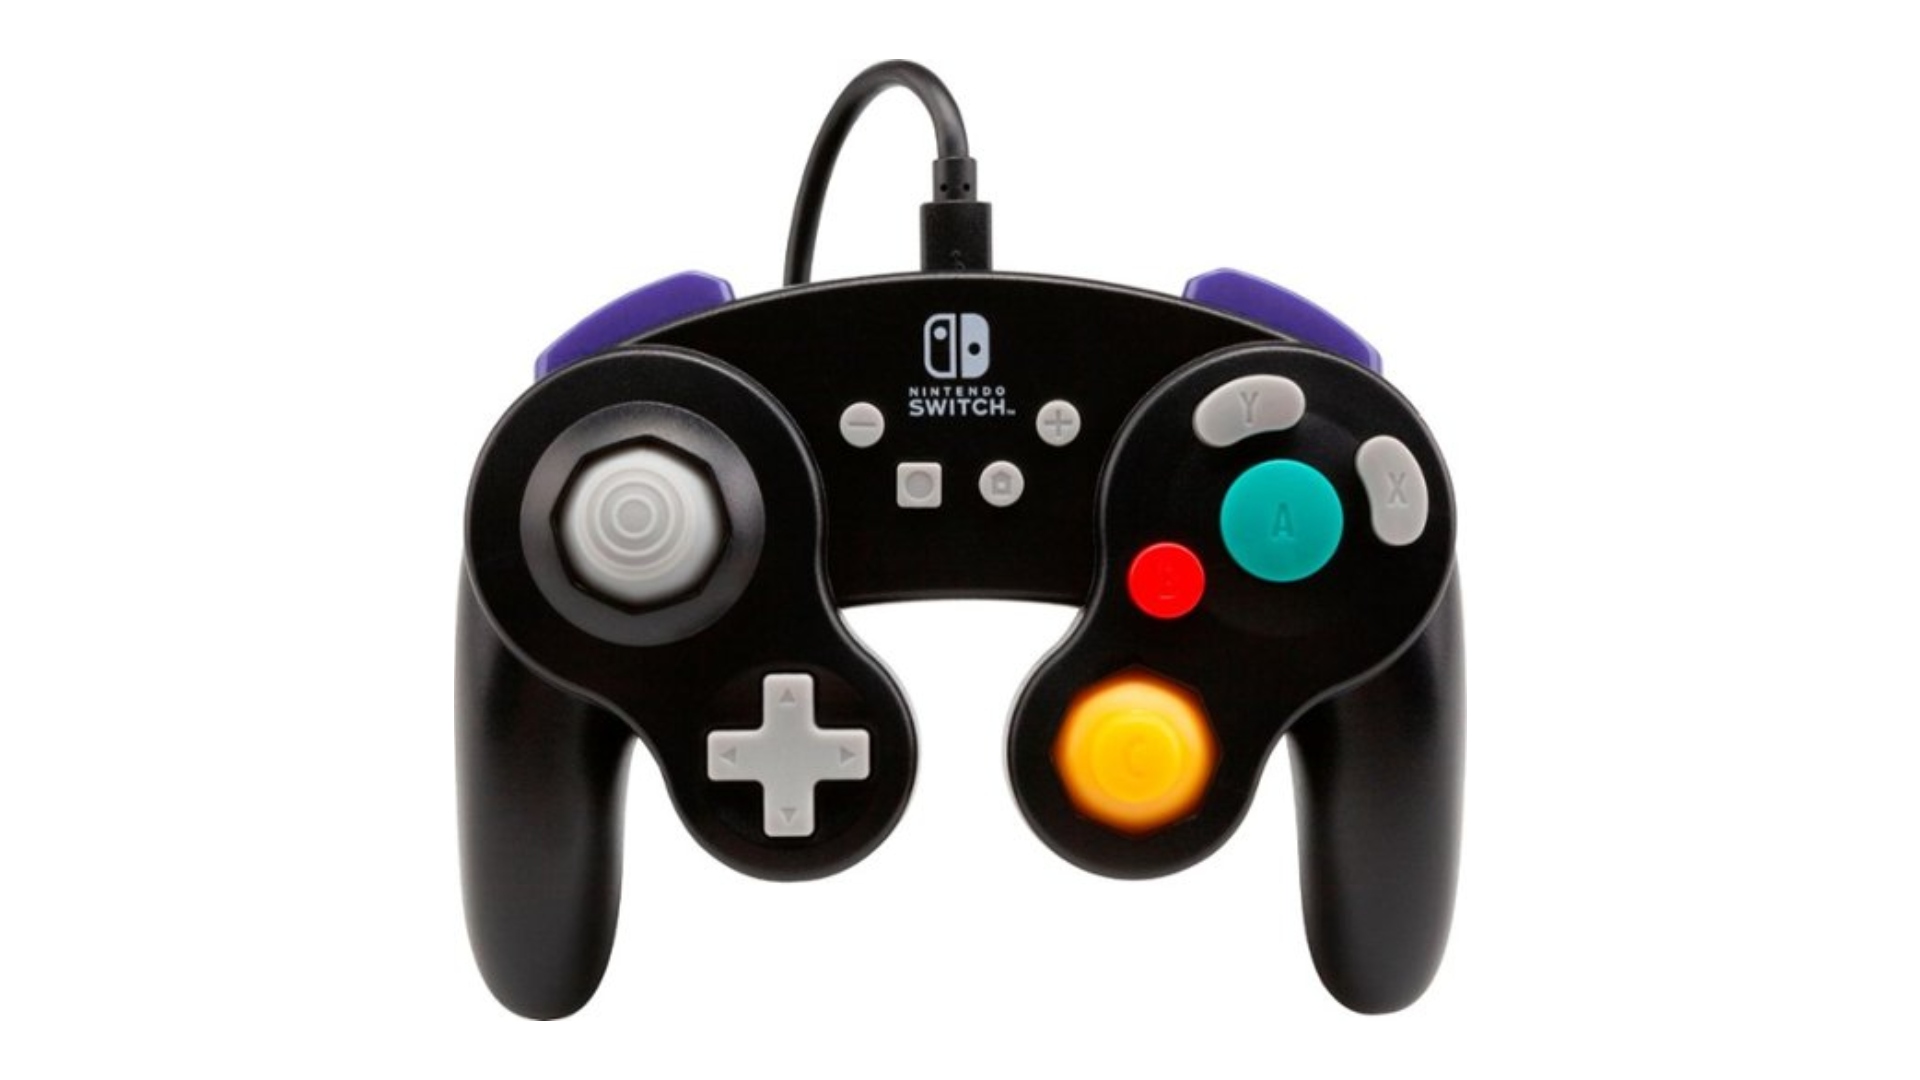 Kontroler Nintendo Switch dryfuje?  Wypróbuj kontrolery Switch GameCube pokazane na obrazku.  Są identyczne z klasycznymi kontrolerami GameCube, z dodatkiem logo Switcha i kilkoma dodatkowymi przyciskami.